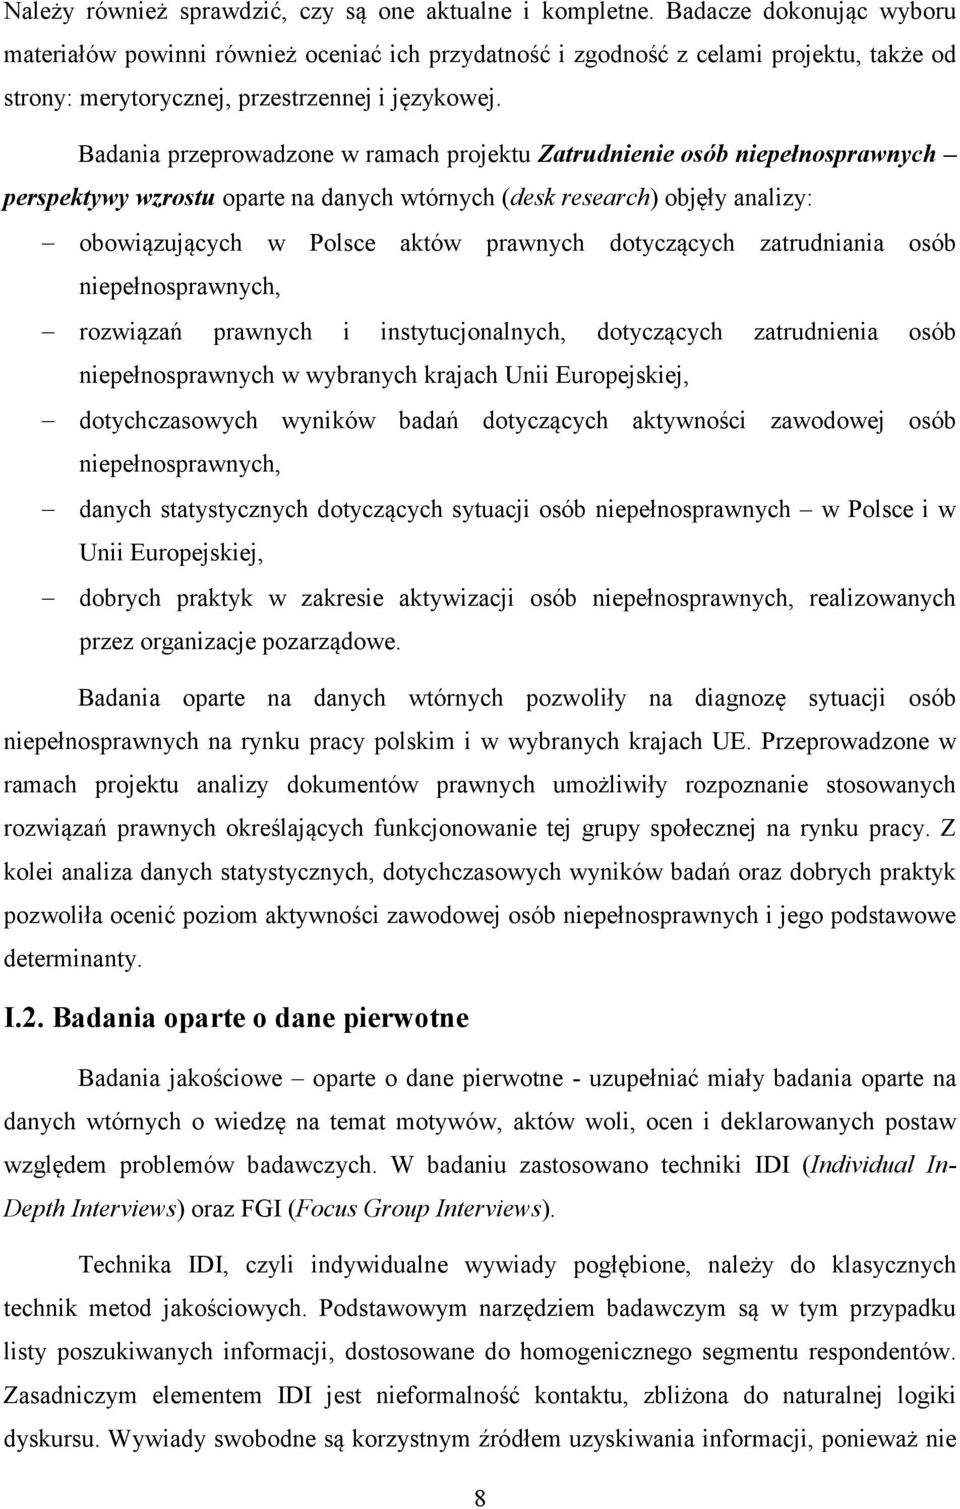 Badania przeprowadzone w ramach projektu Zatrudnienie osób niepełnosprawnych perspektywy wzrostu oparte na danych wtórnych (desk research) objęły analizy: obowiązujących w Polsce aktów prawnych